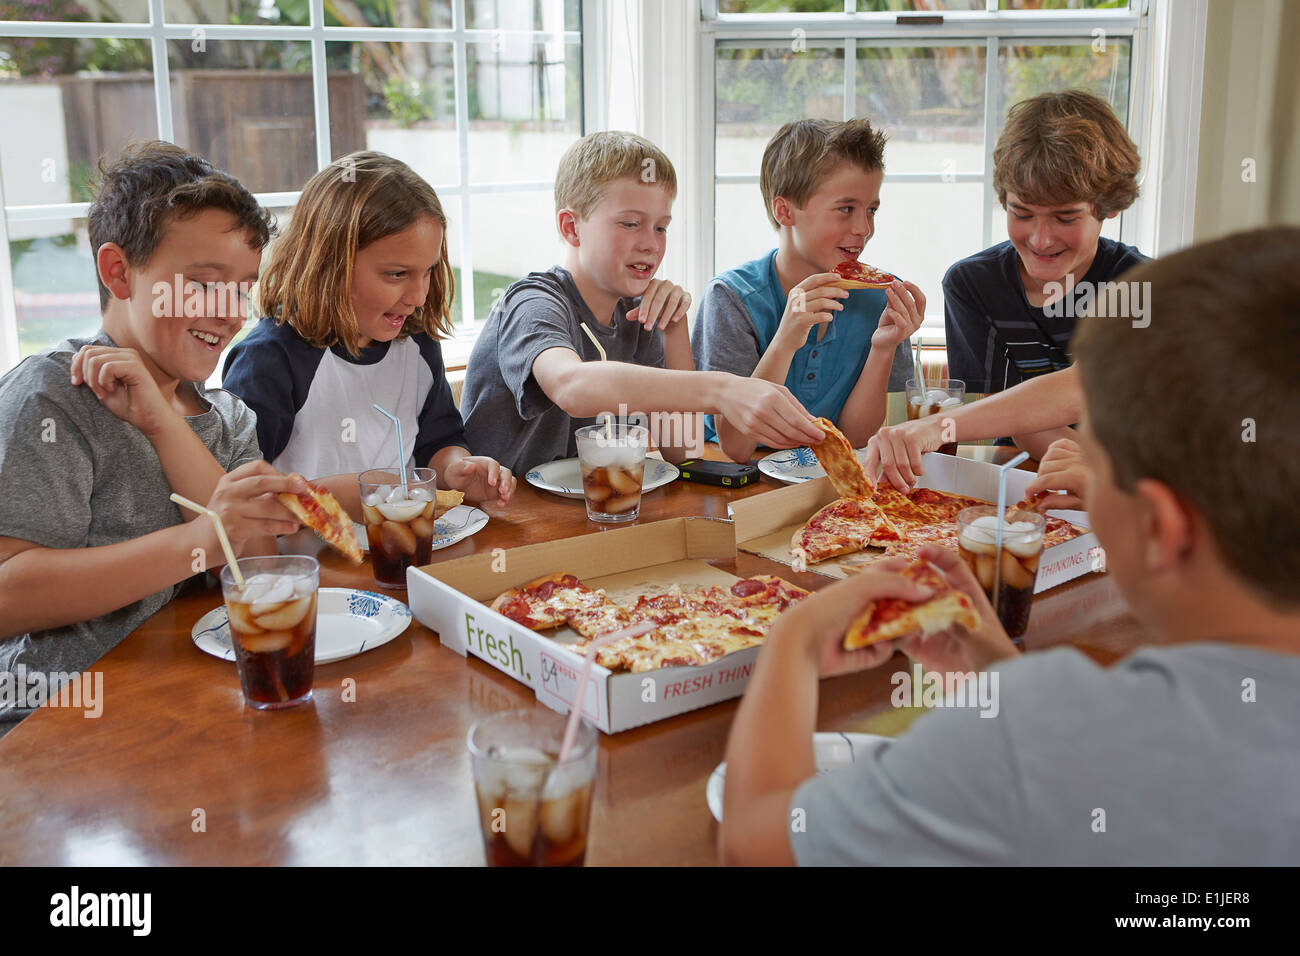 Grupo de niños compartiendo pizza Foto de stock